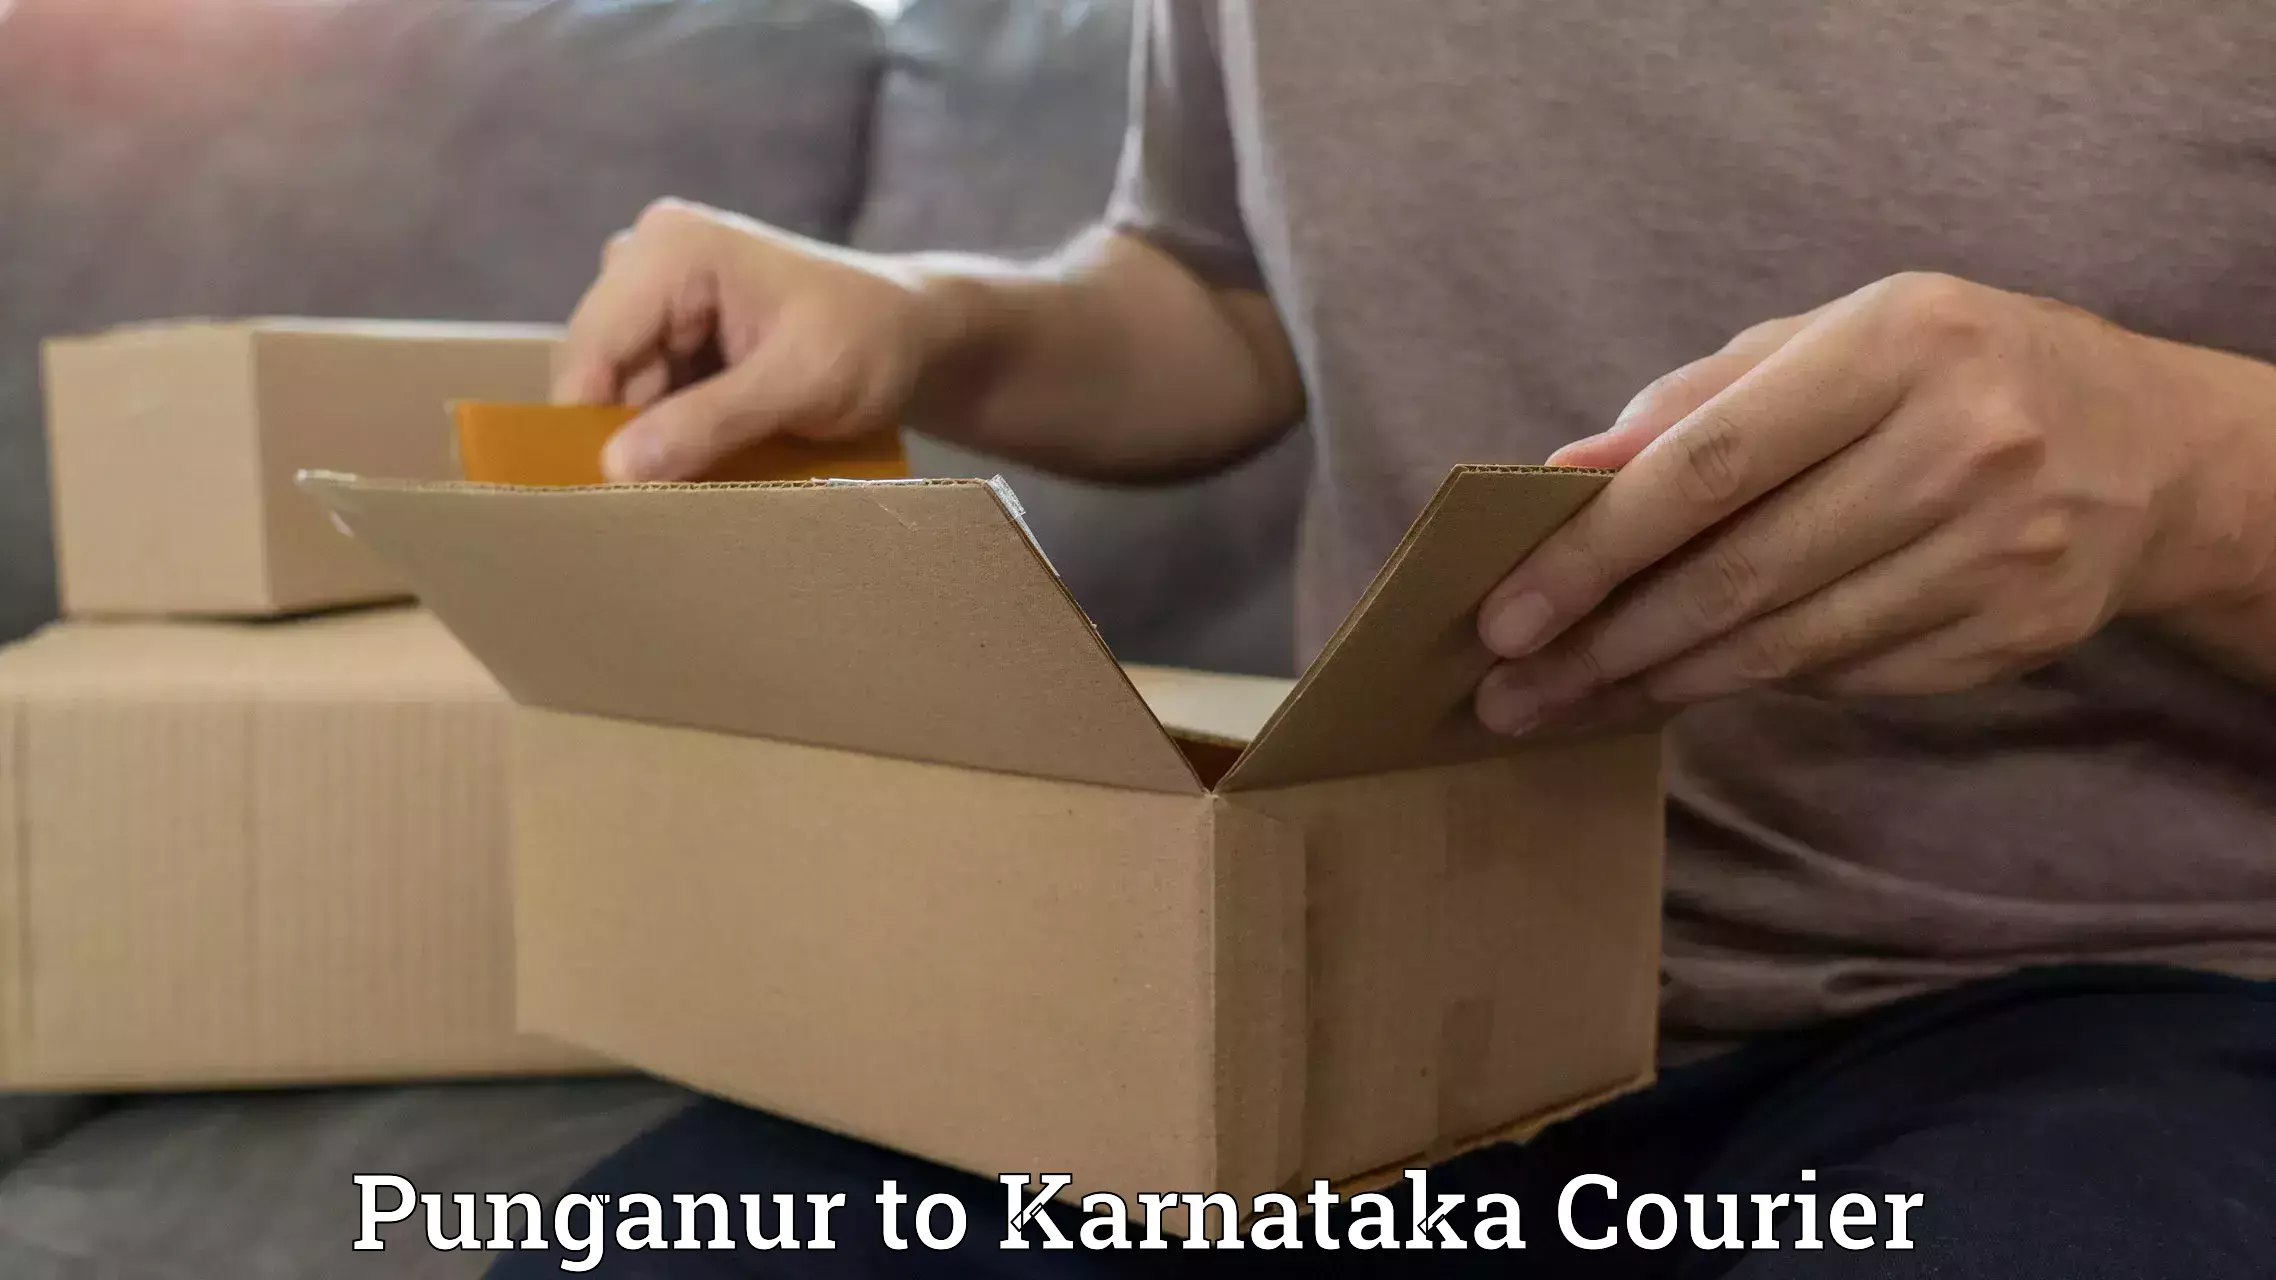 Online package tracking Punganur to Kulshekar